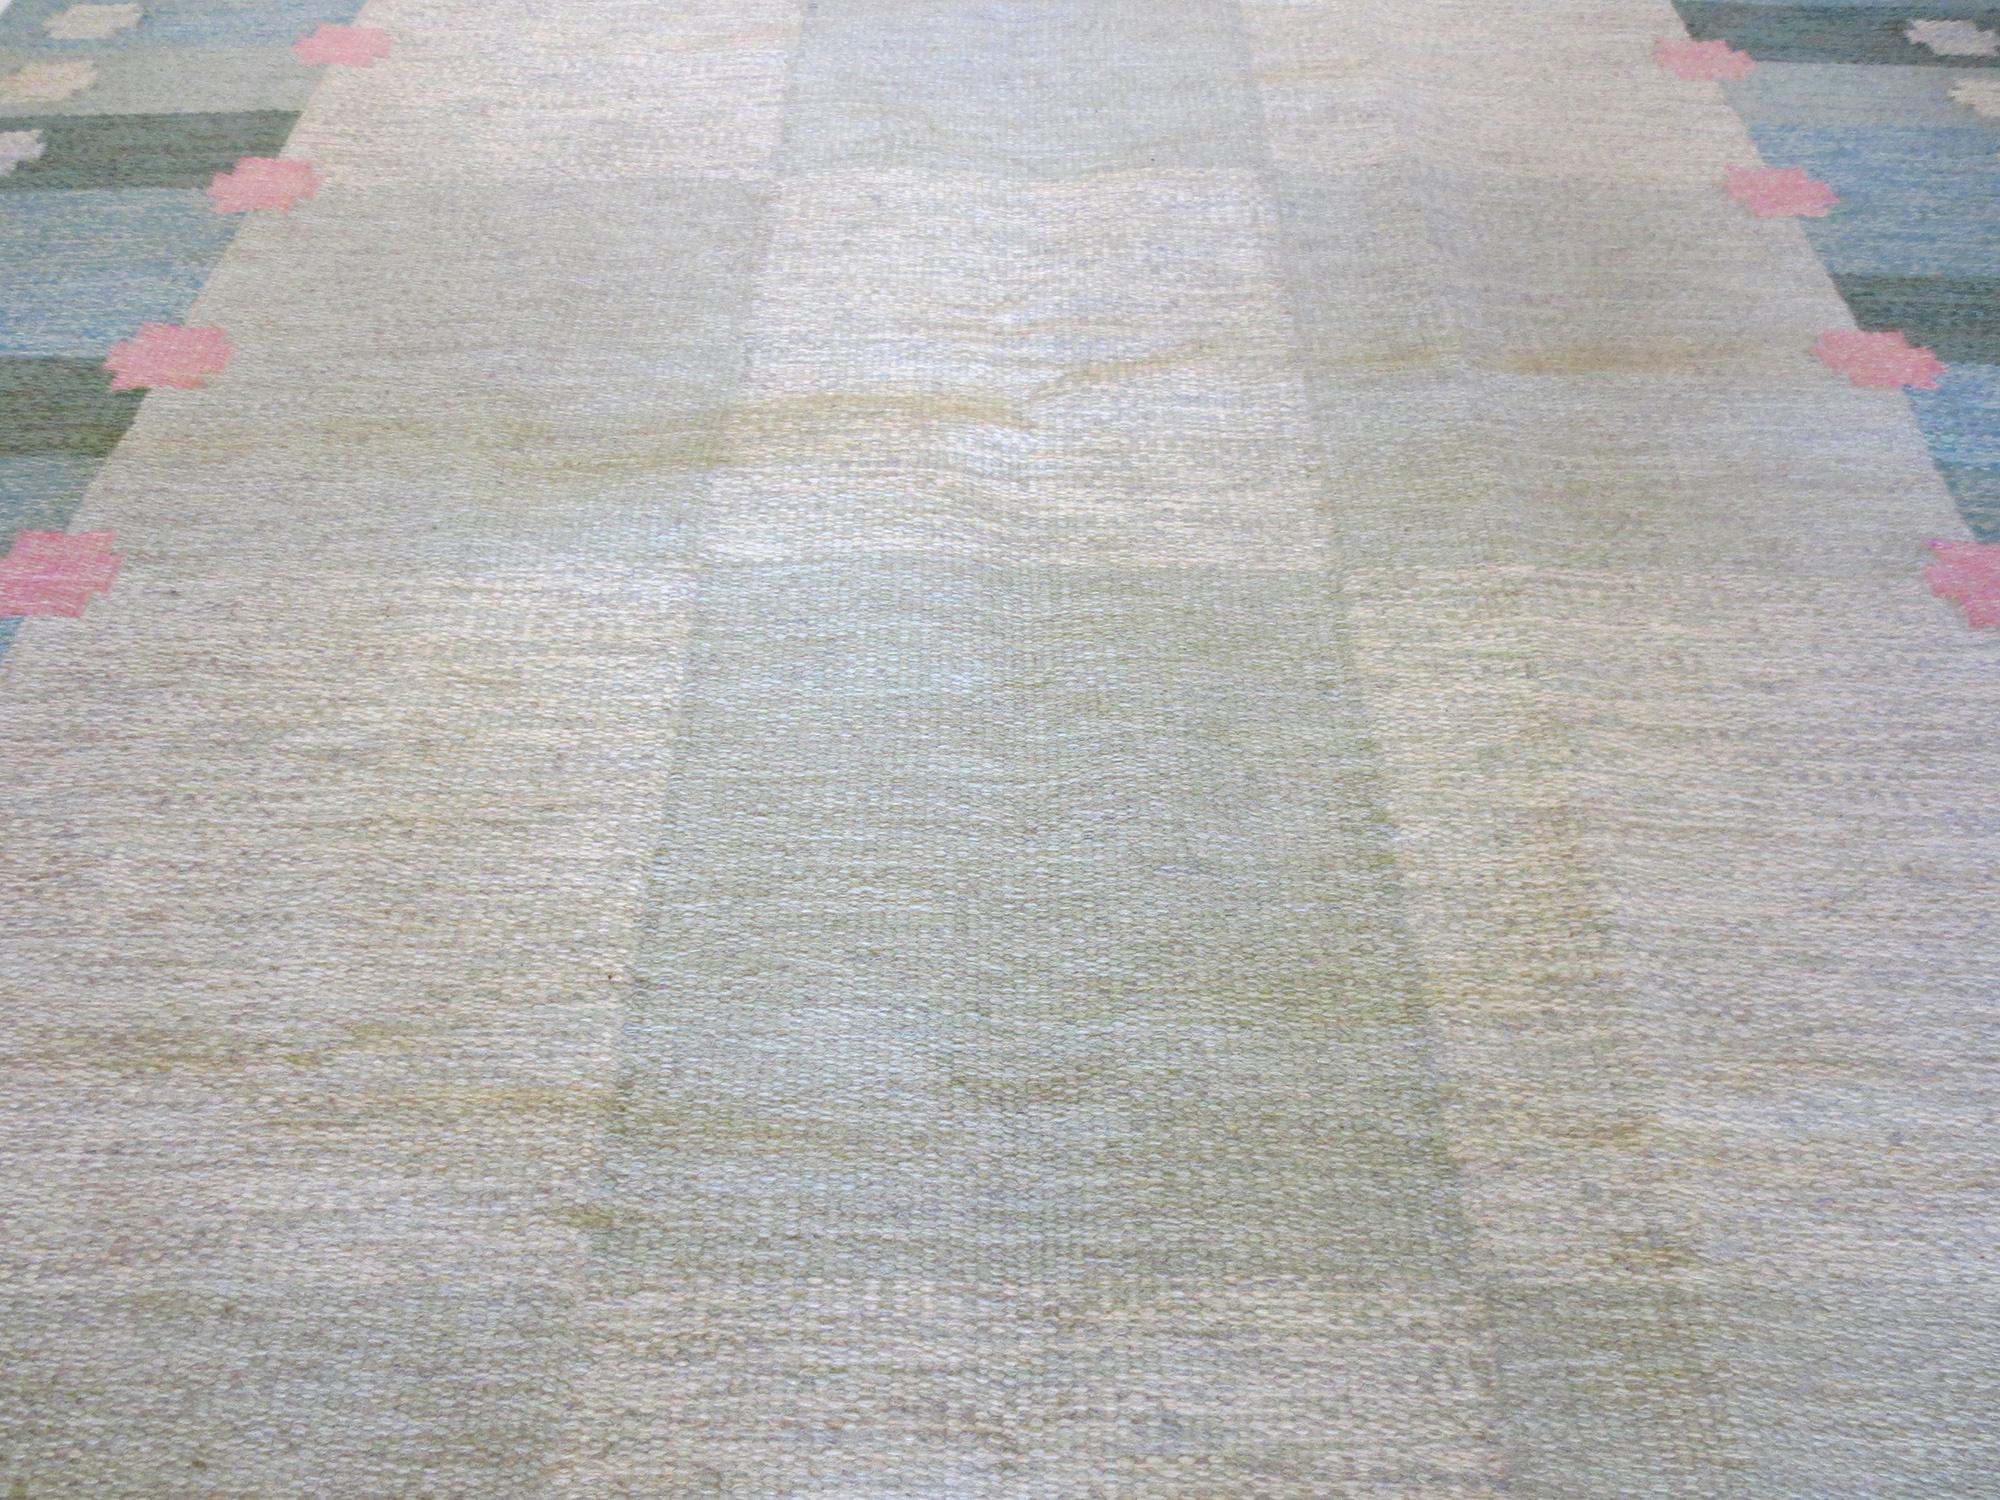 Il s'agit d'un magnifique tapis Kilim suédois vintage de la designer Anna Joanna Angstrom datant du milieu du 20e siècle. Ses couleurs douces de verts, de bleus et de roses évoquent un sentiment de calme tandis que les éléments verticaux et